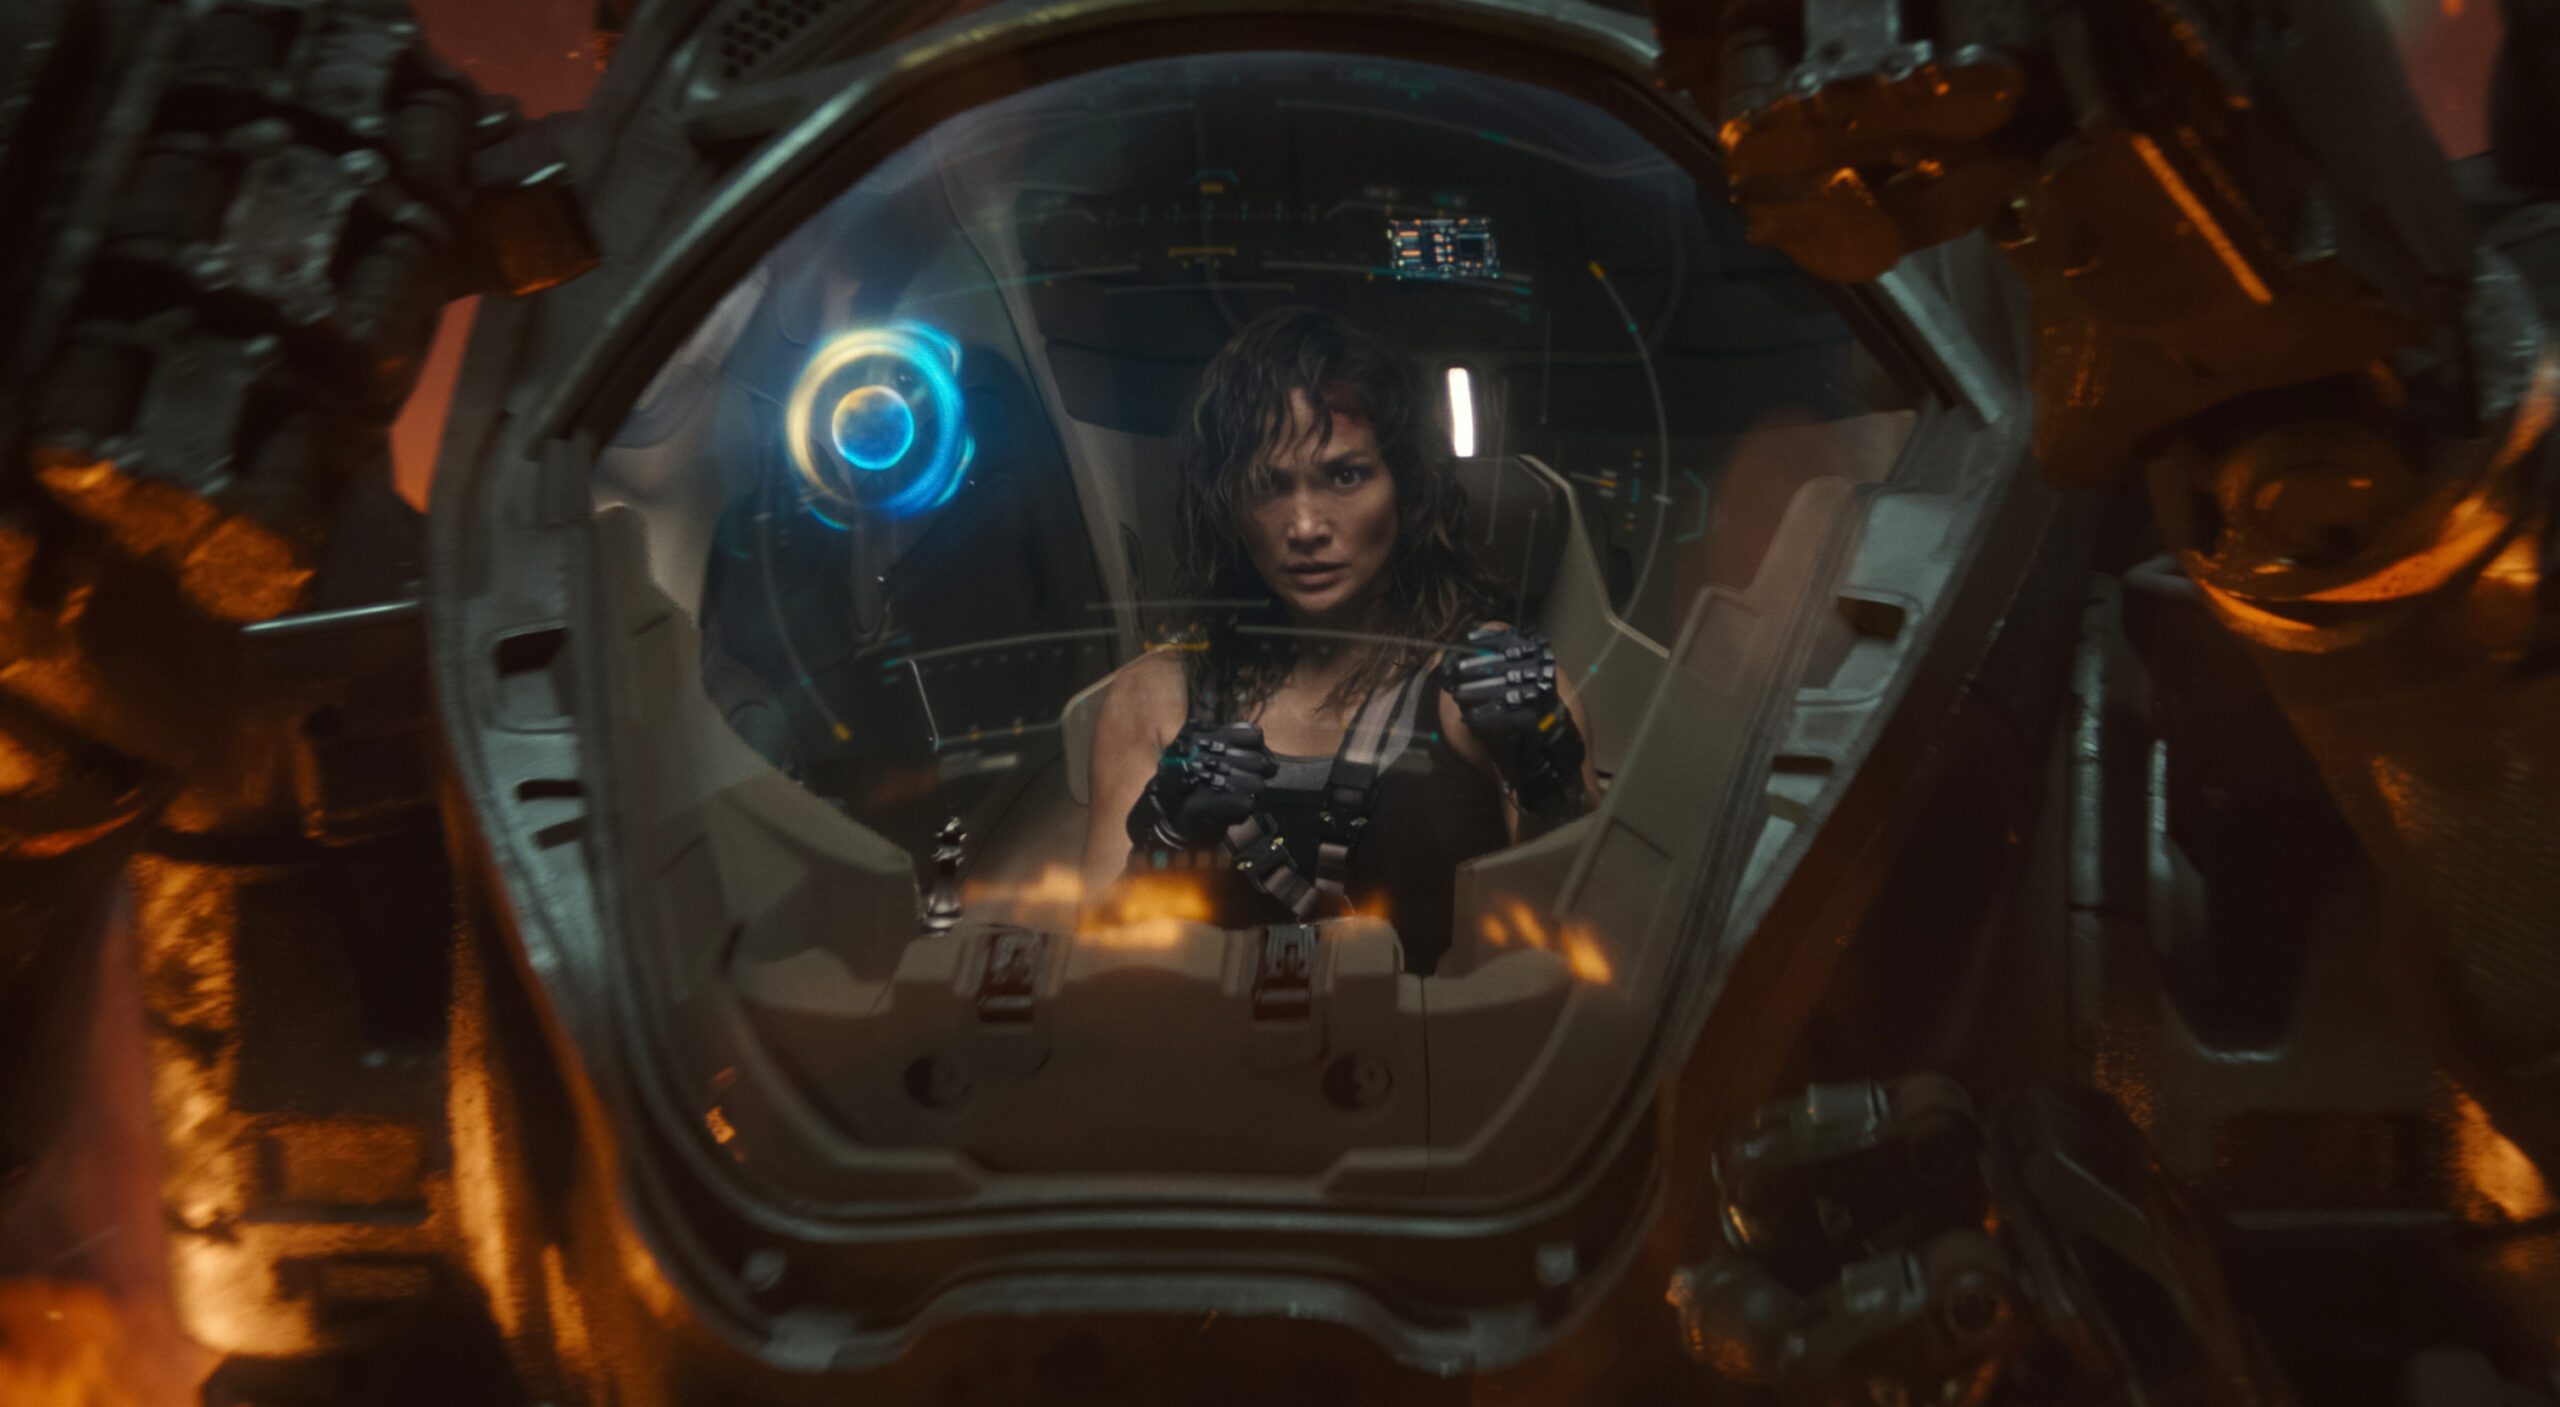 Jennifer Lopez atuando em Atlas, o novo filme de ficção científica da Netflix.